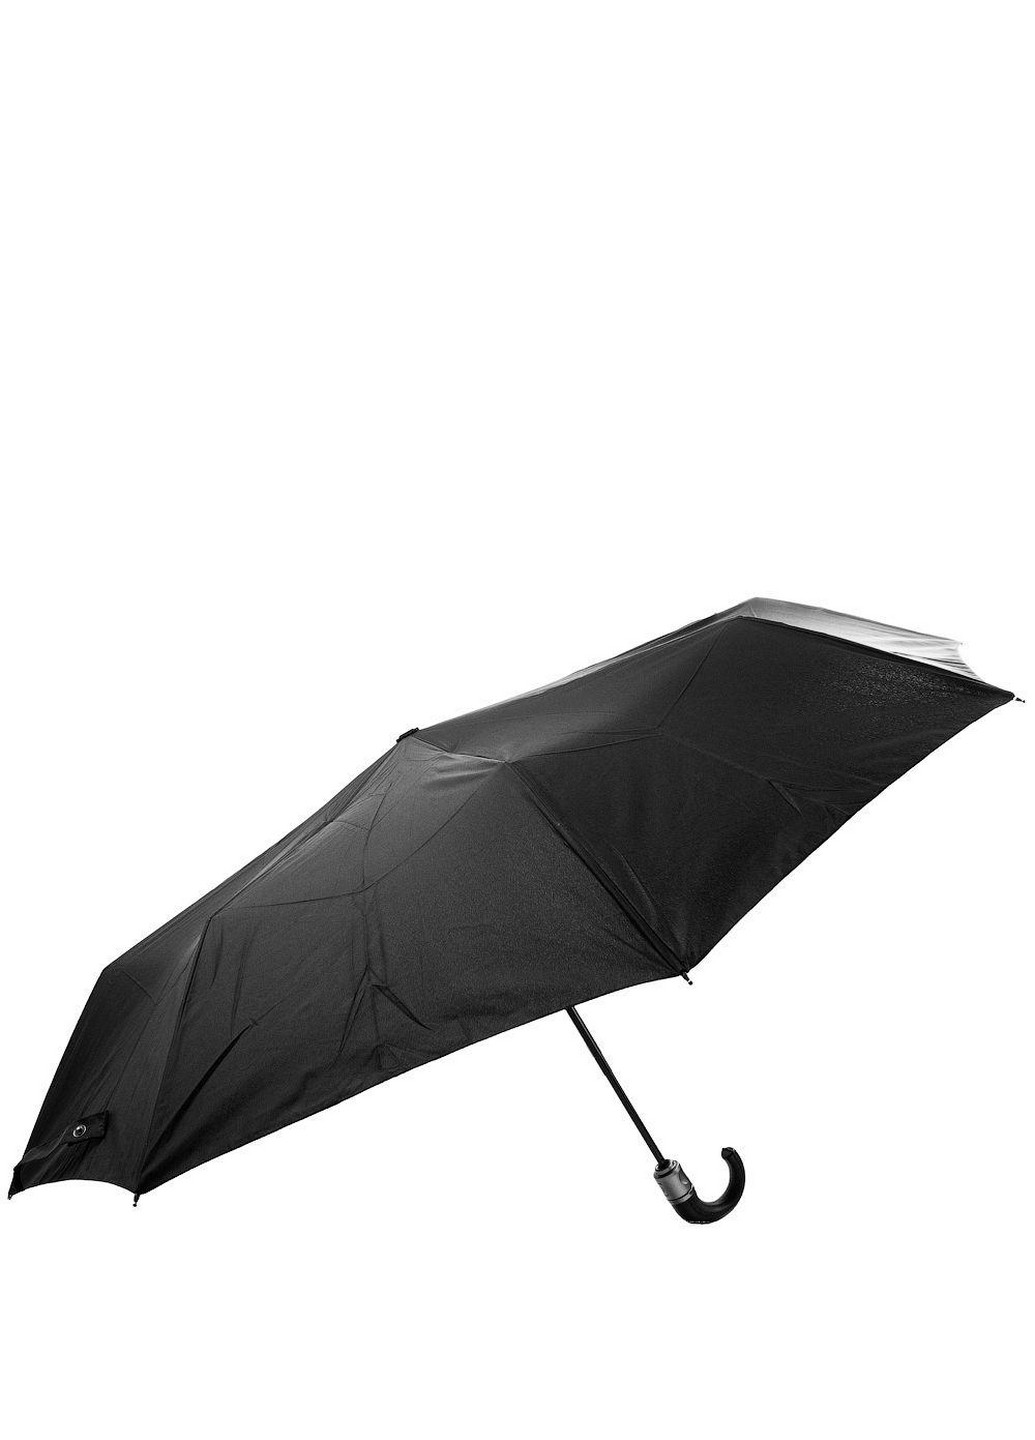 Мужской складной зонт автомат 109 см Lamberti (260330794)